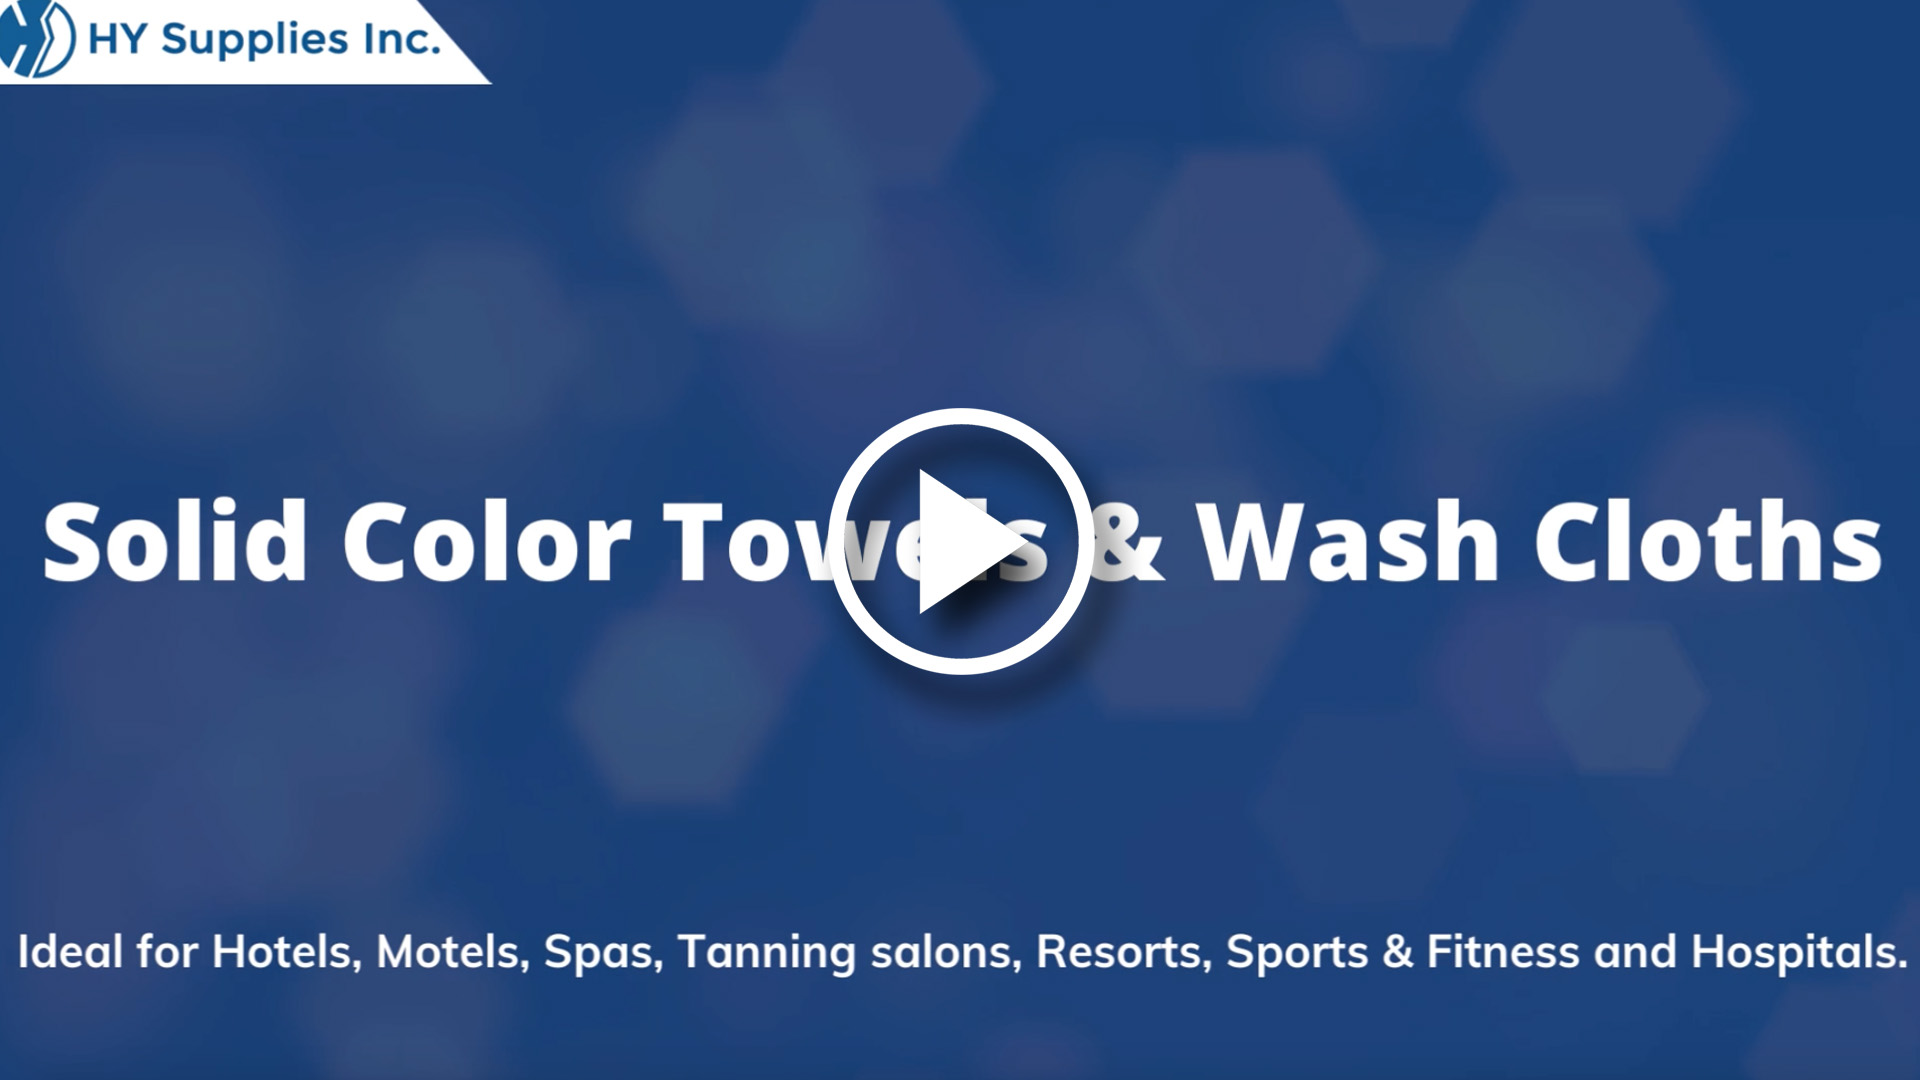 Solid Color Towels & Wash Cloths